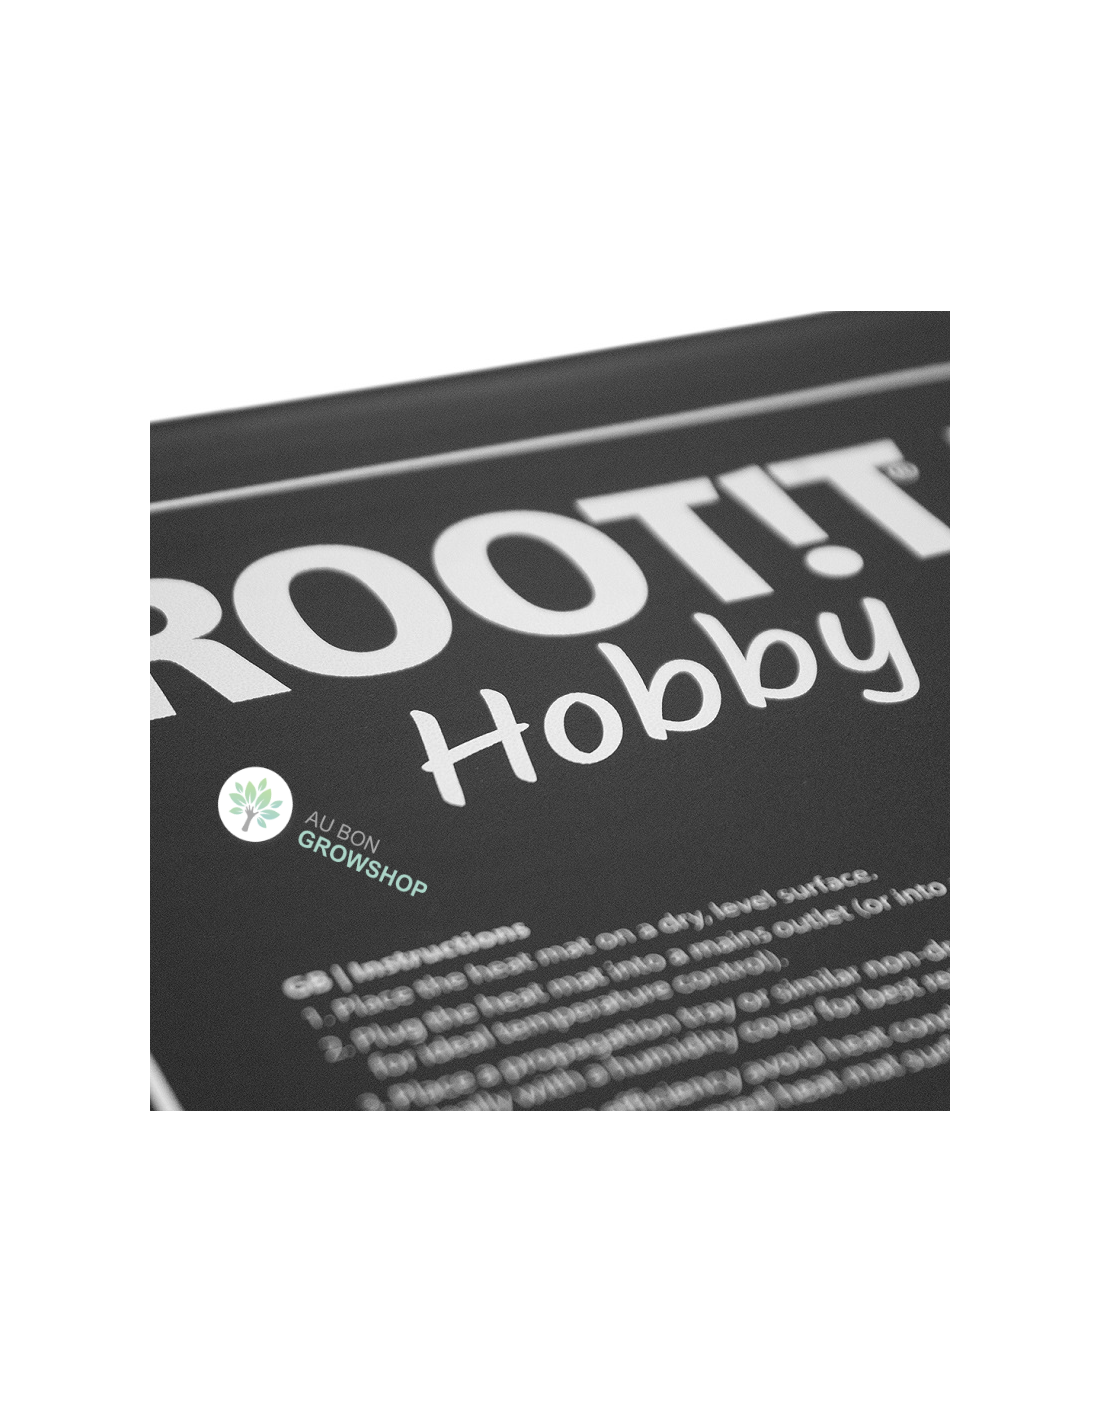 Root!t - Thermostat pour tapis chauffant et serre